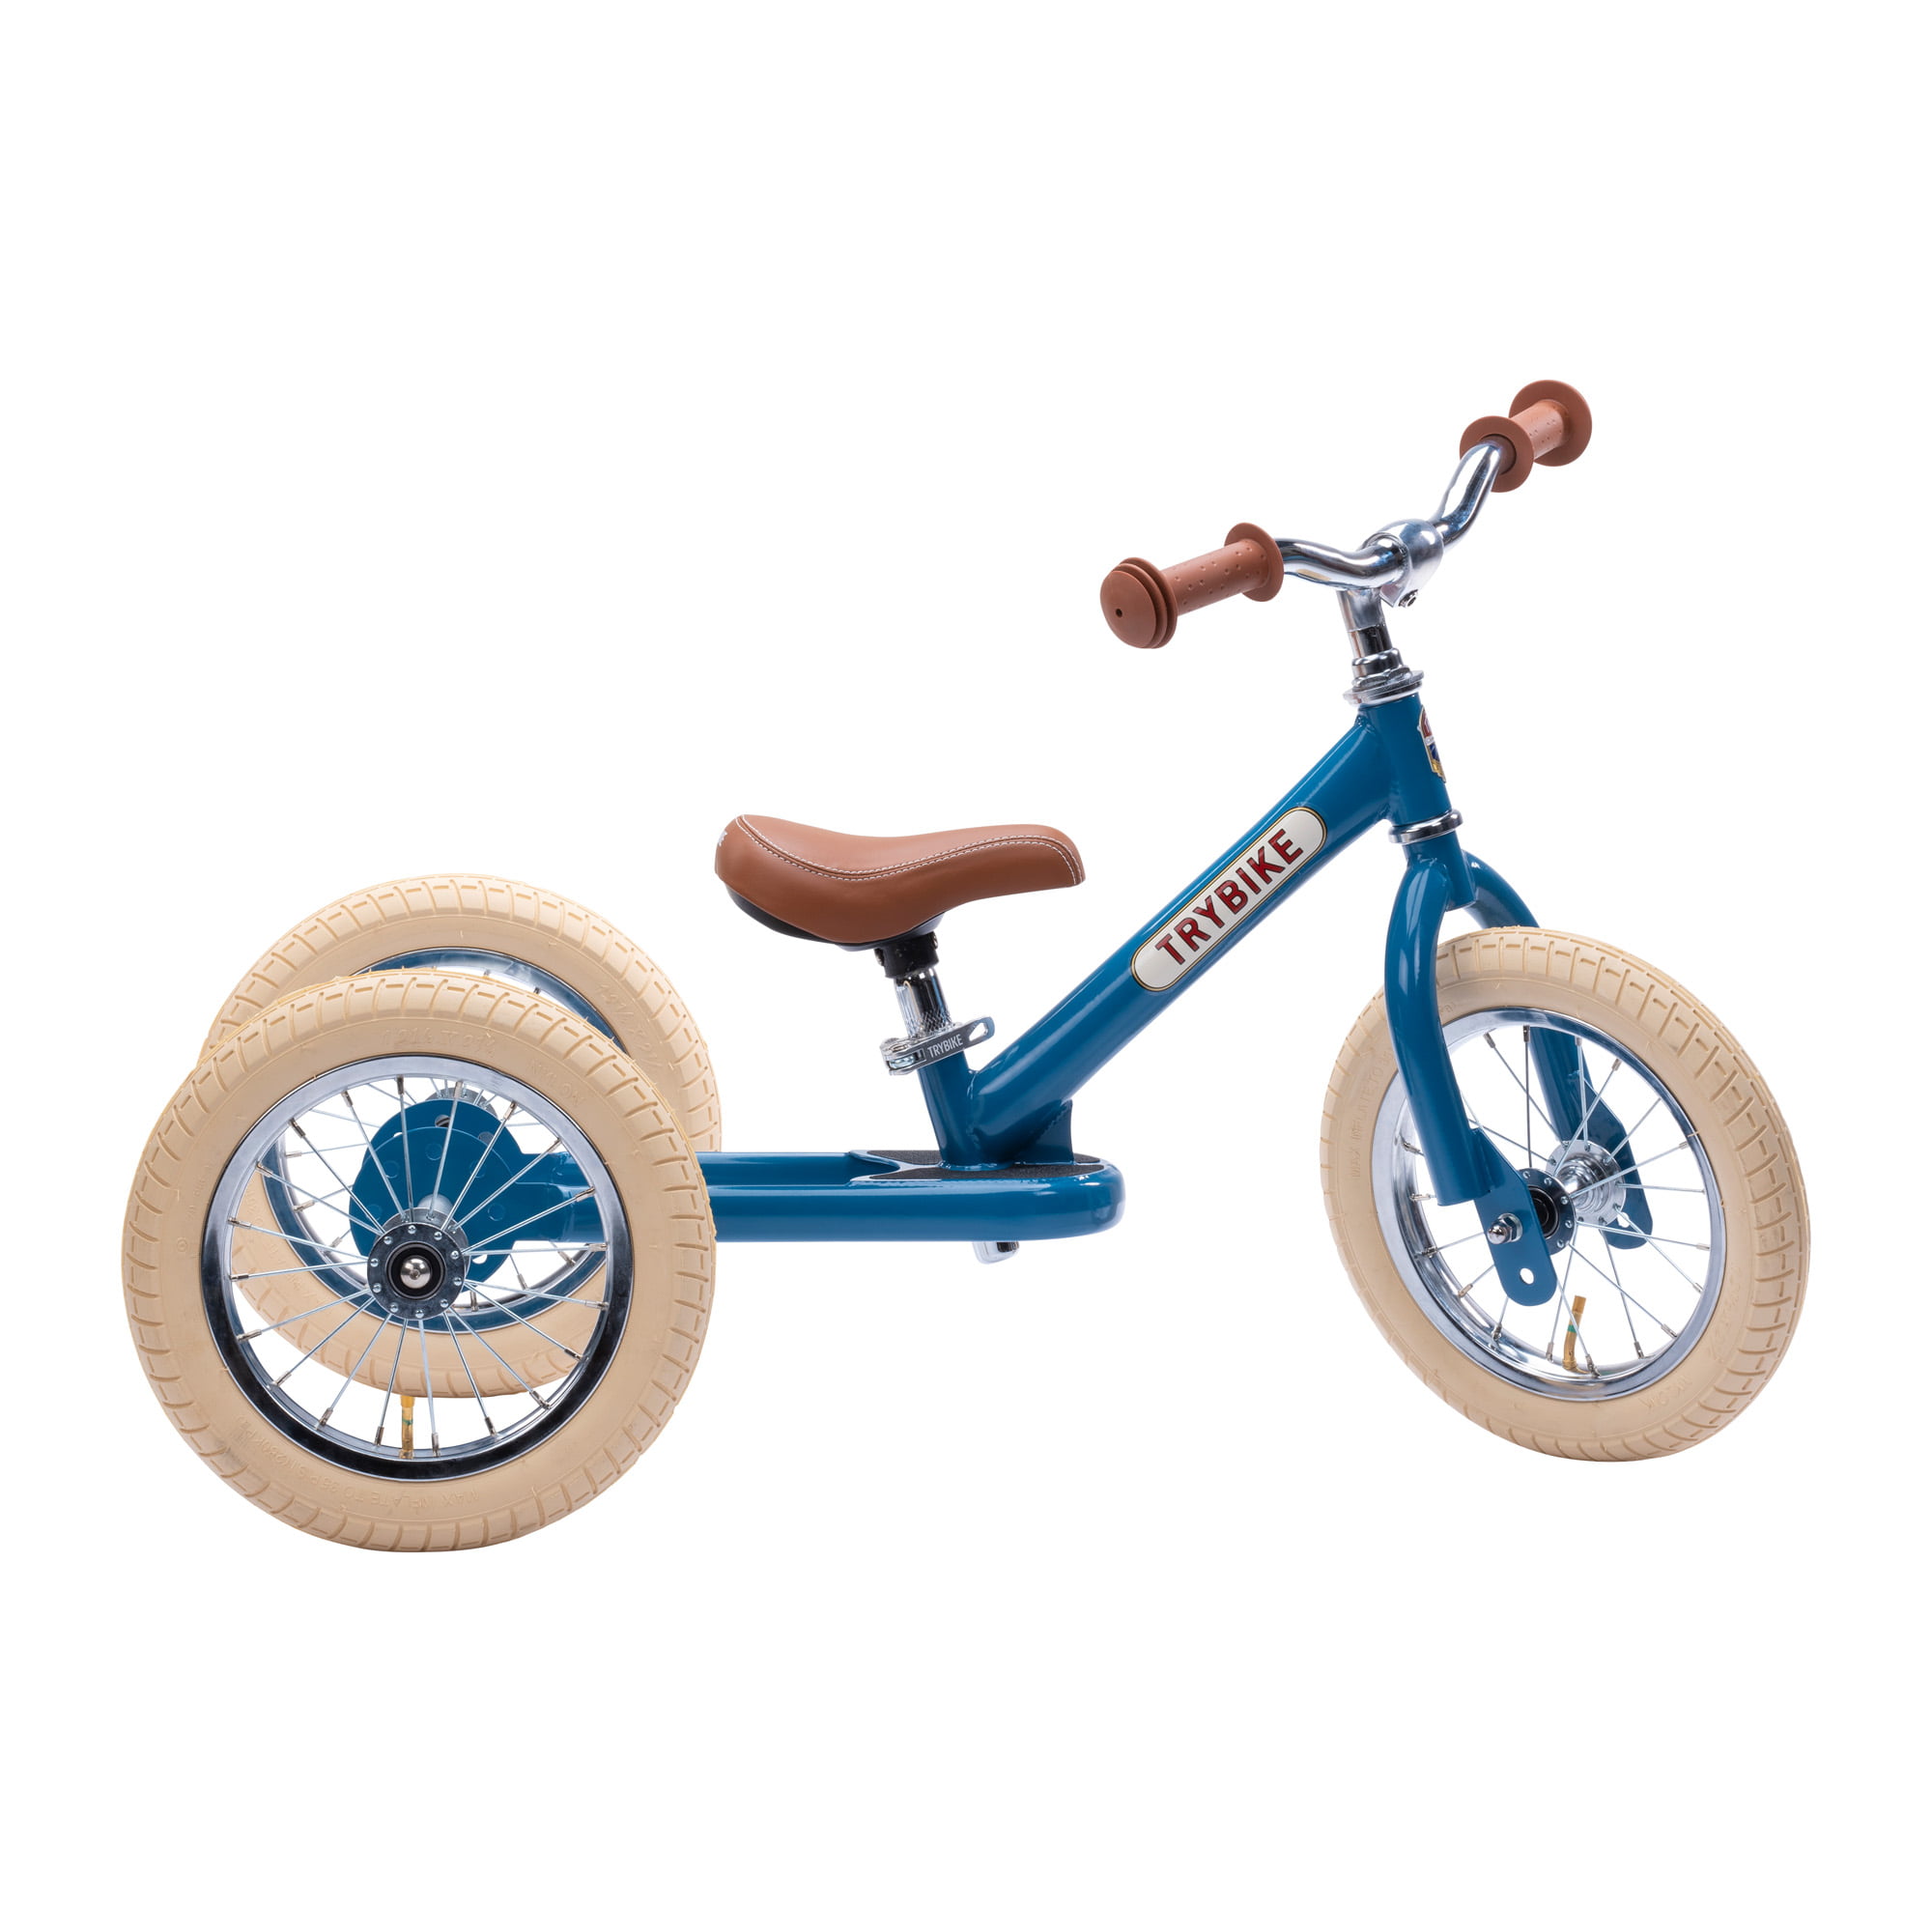 Trybike steel balance bike 2 in 1 – Vintage blue